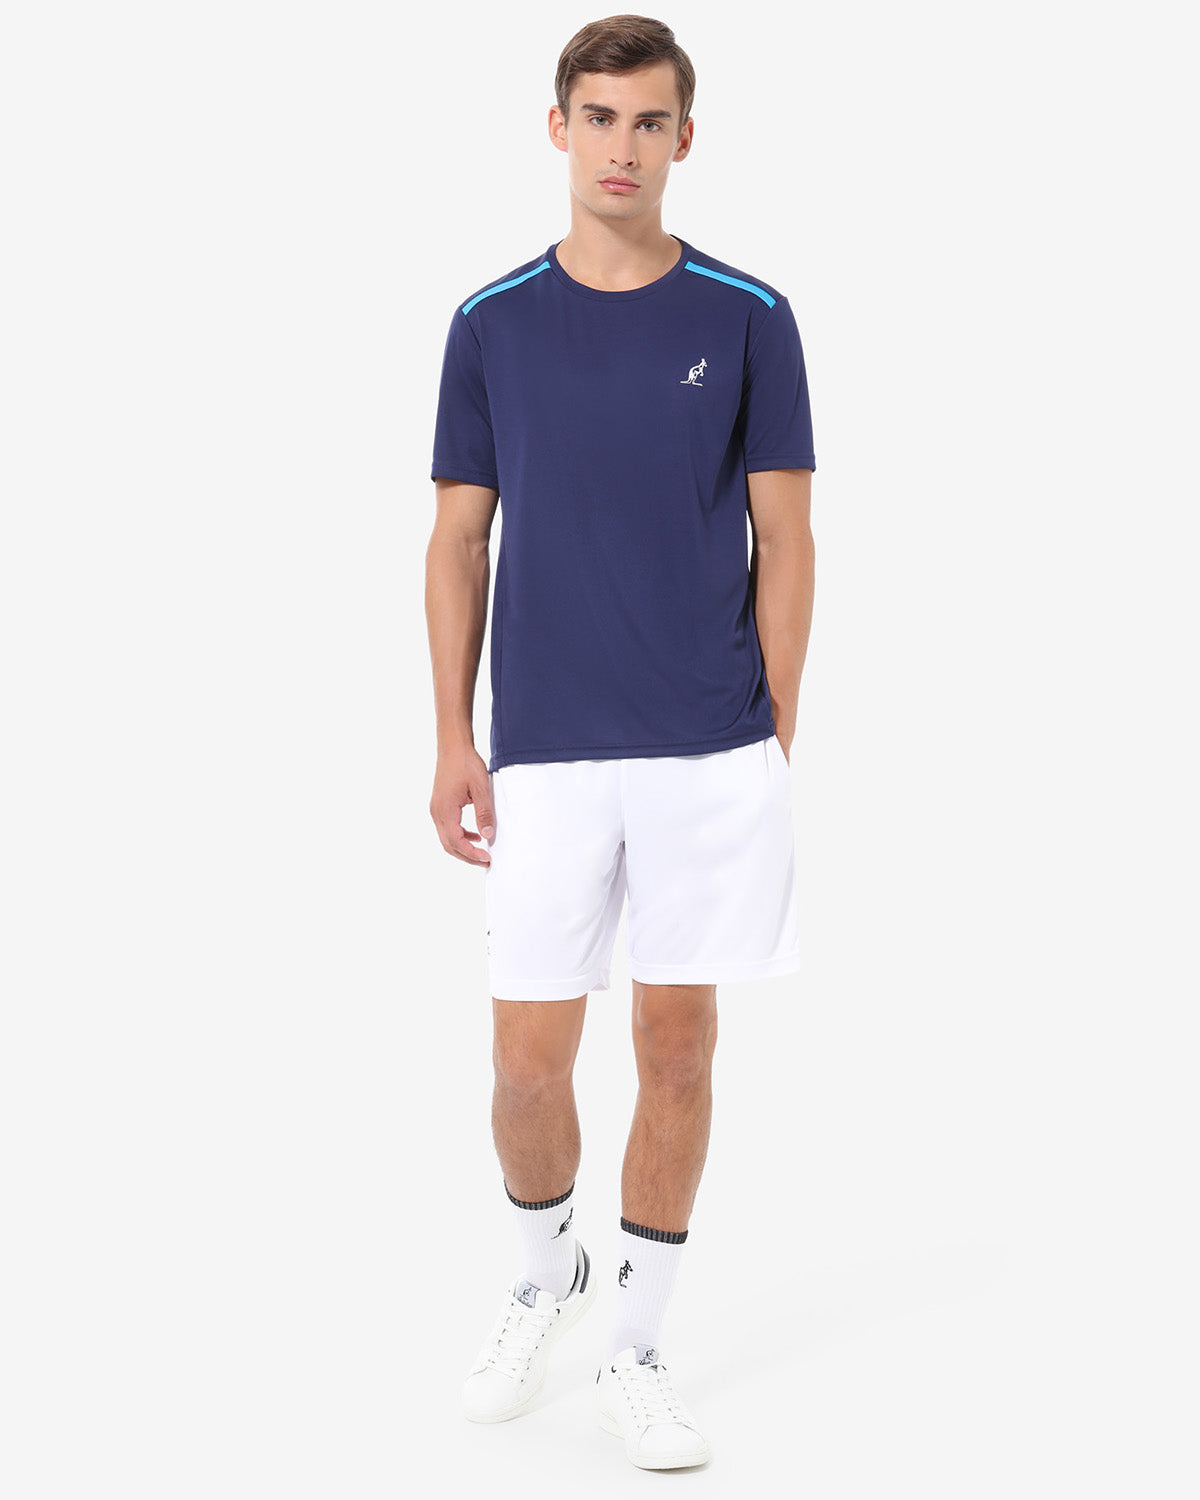 Ace T-Shirt: Australian Tennis